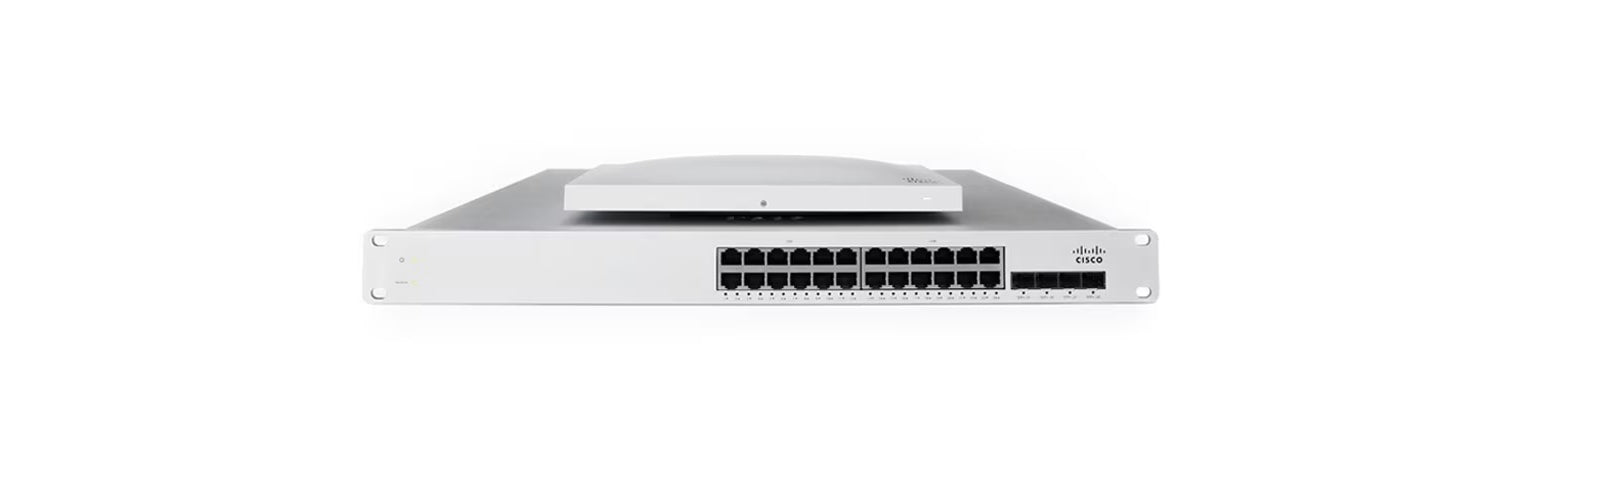 Cisco Meraki Router